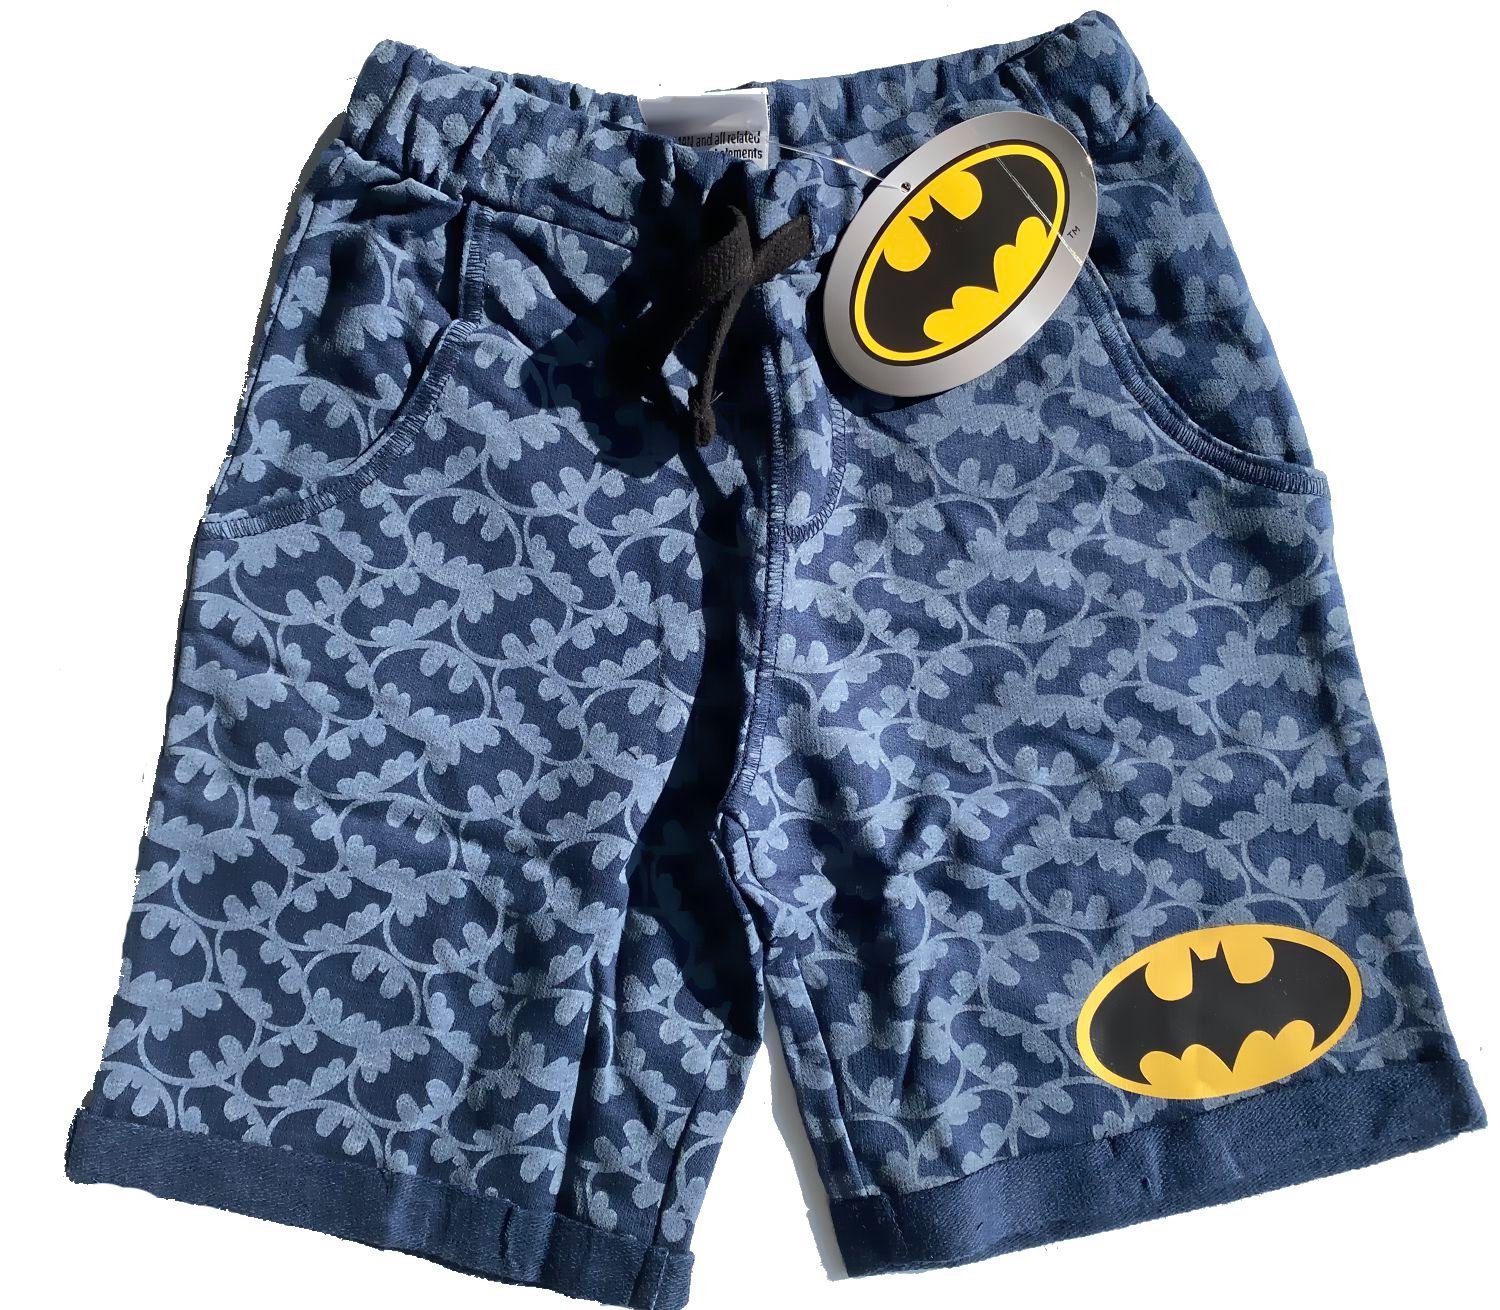 grau oder kurze Hose Kinder Jungen 134 Größen 128 blau 122 Batman Shorts Sommerhose BATMAN 116 110 104 Shorts